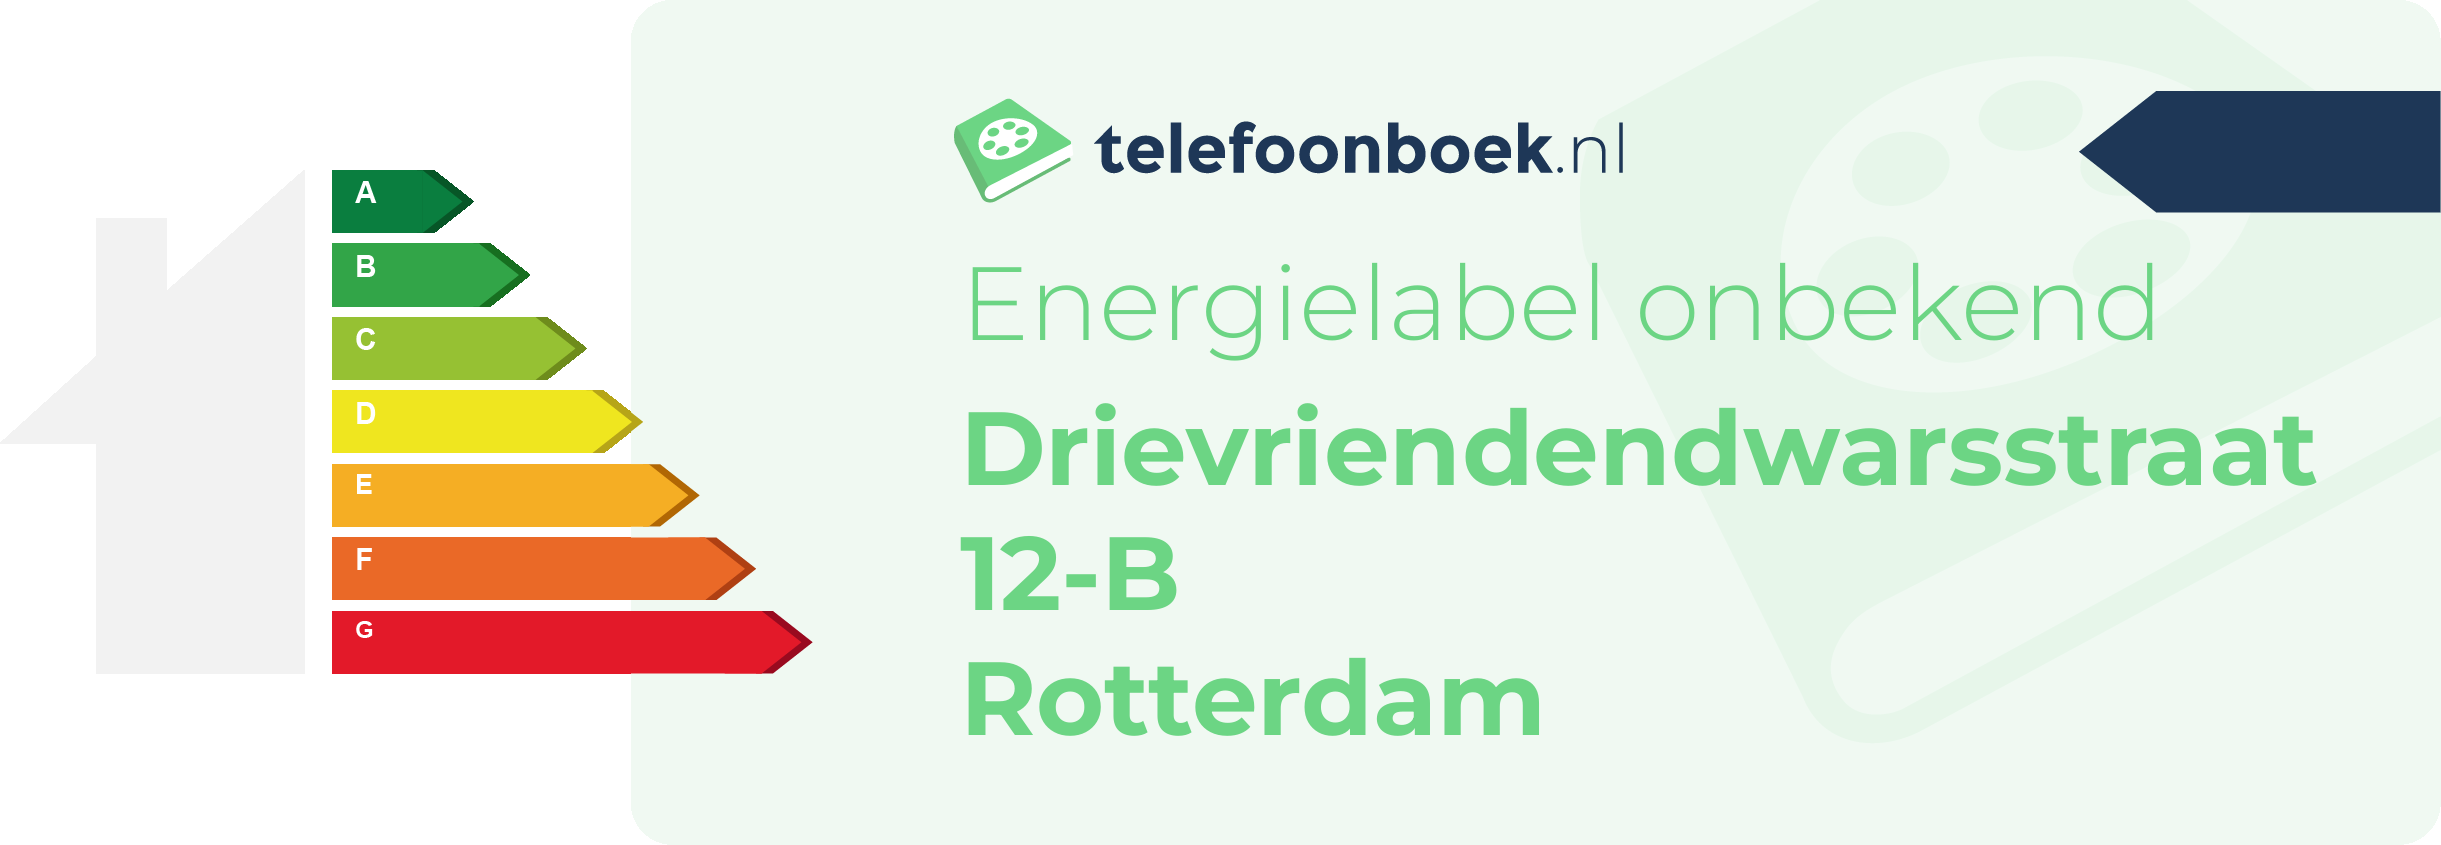 Energielabel Drievriendendwarsstraat 12-B Rotterdam